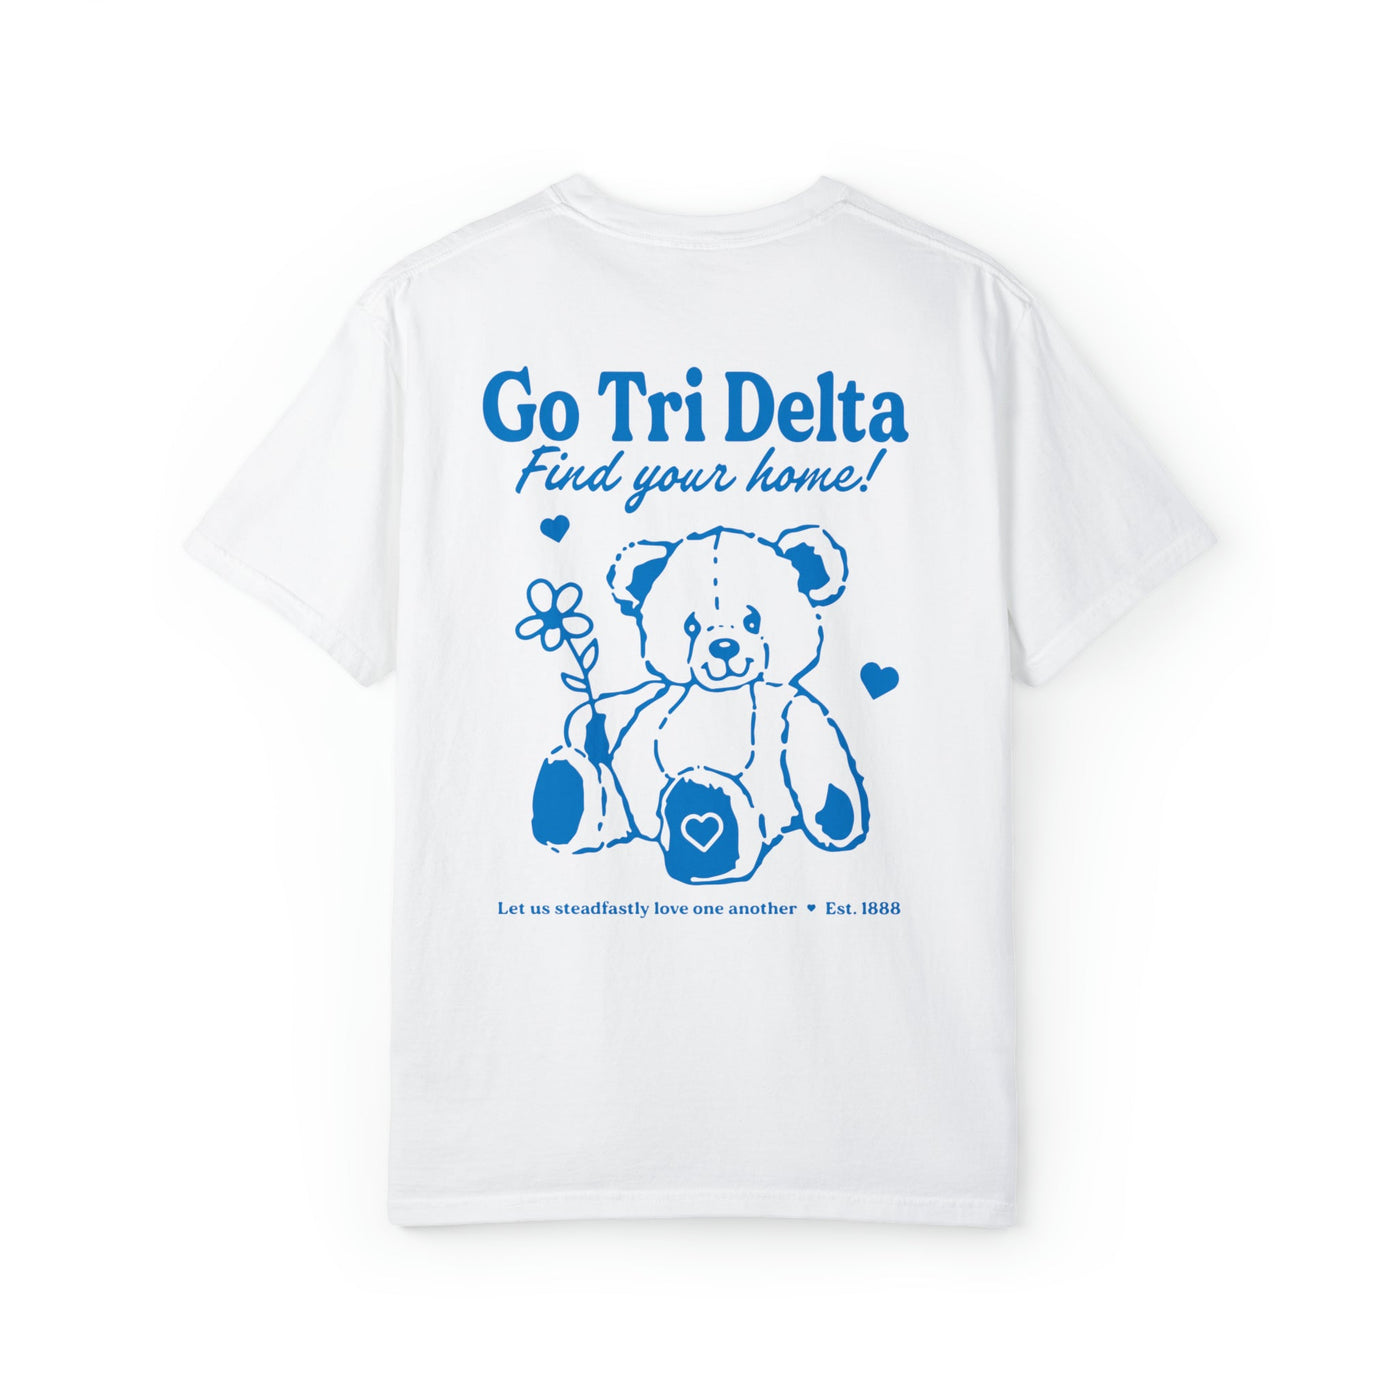 Delta Delta Delta Teddy Bear Sorority T-shirt